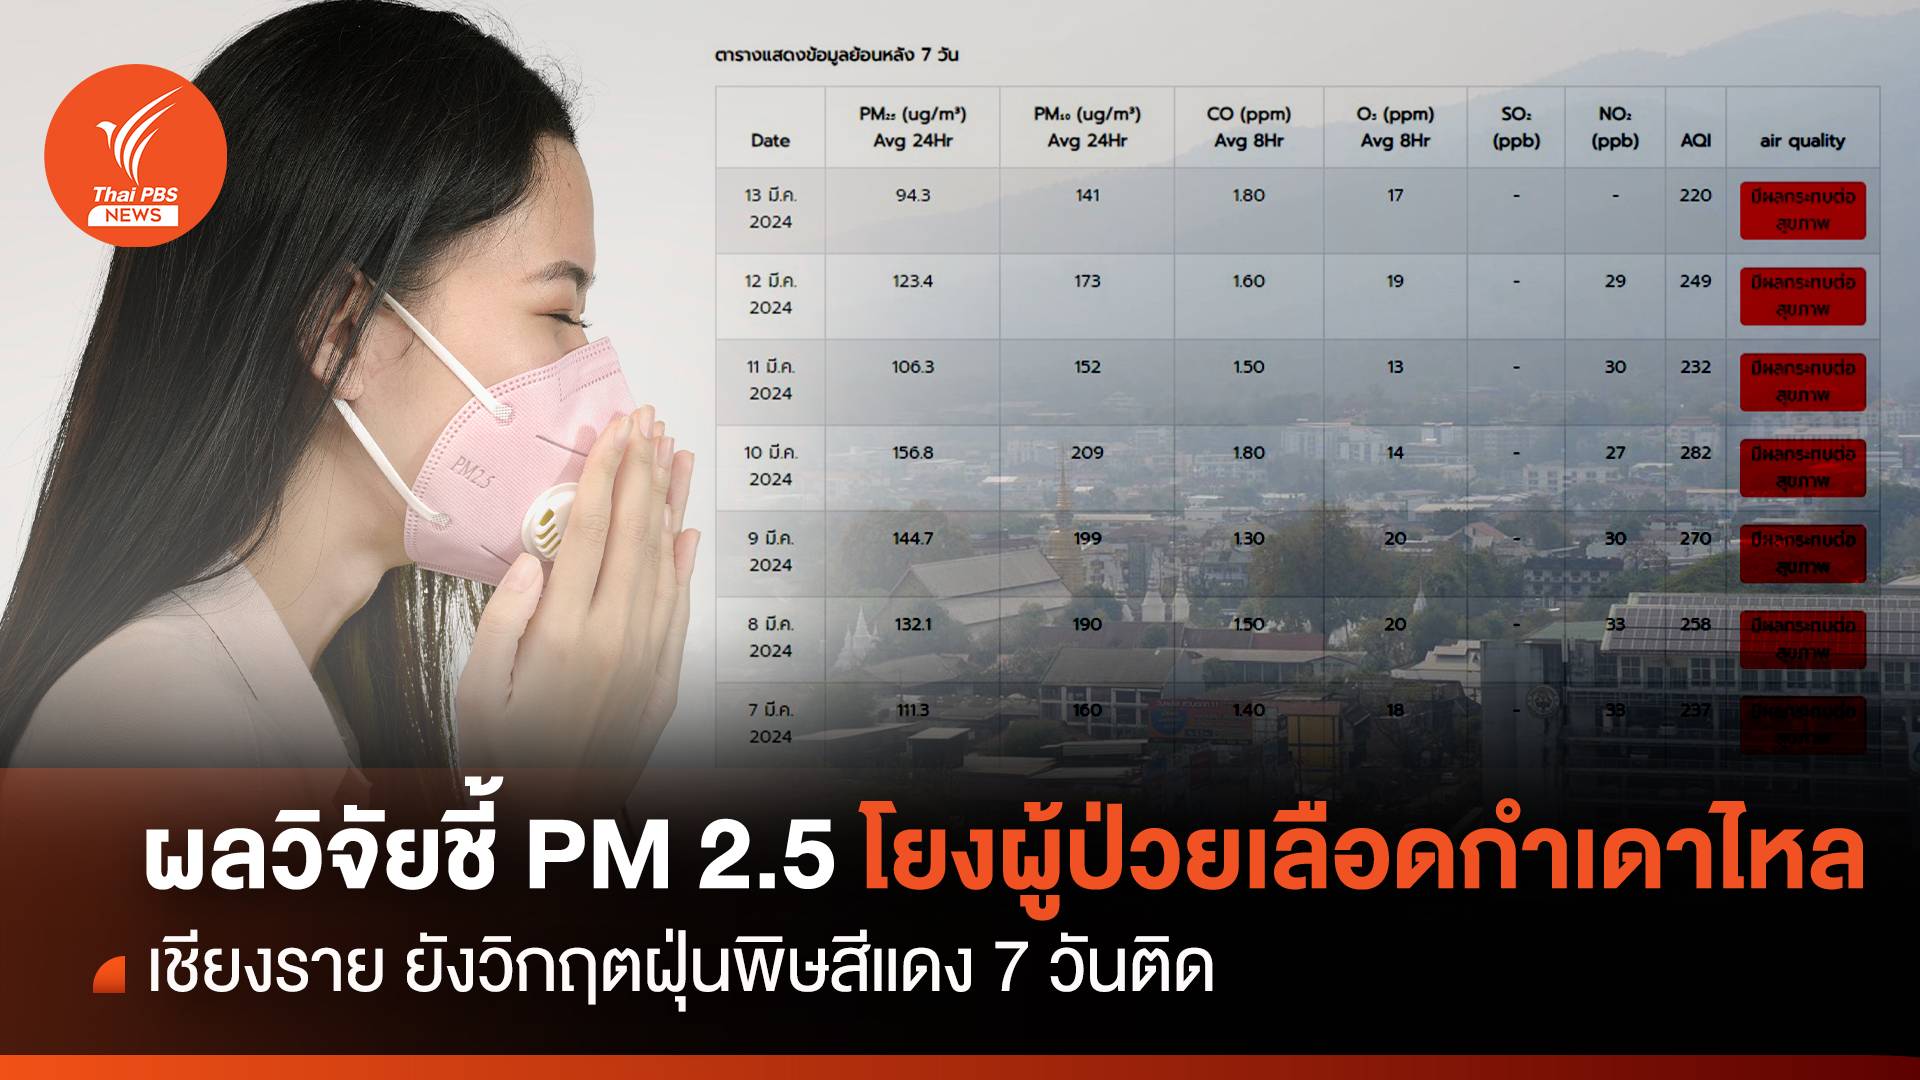 มช.เปิดผลวิจัย PM 2.5 โยงผู้ป่วยเลือดกำเดาไหล